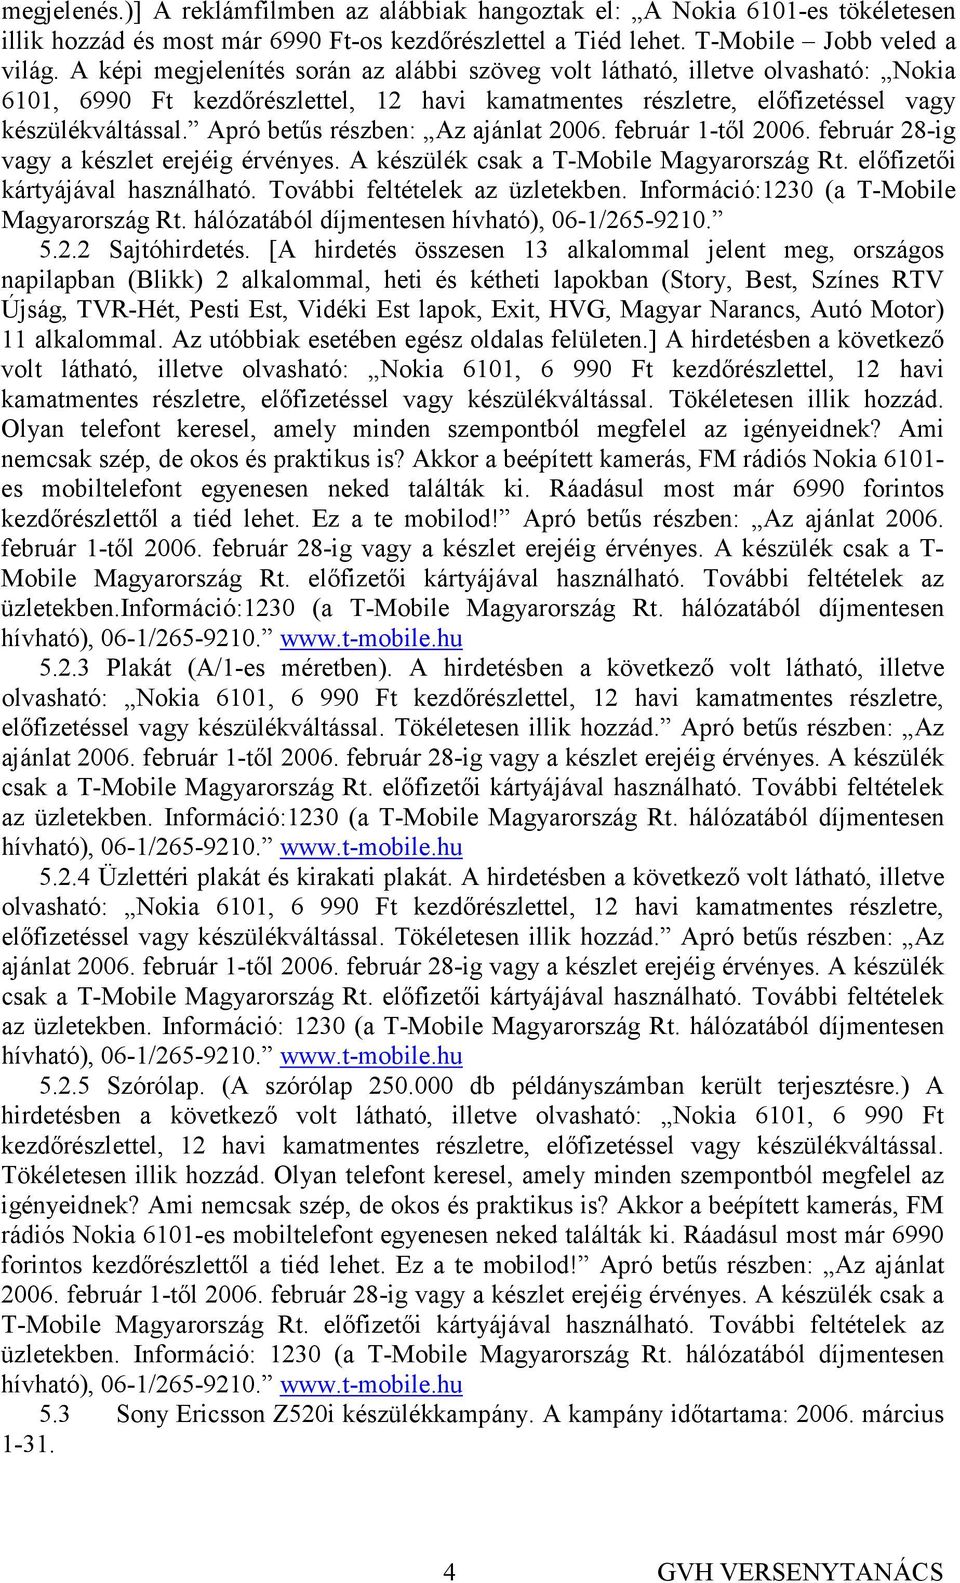 Apró betős részben: Az ajánlat 2006. február 1-tıl 2006. február 28-ig vagy a készlet erejéig érvényes. A készülék csak a T-Mobile Magyarország Rt. elıfizetıi kártyájával használható.